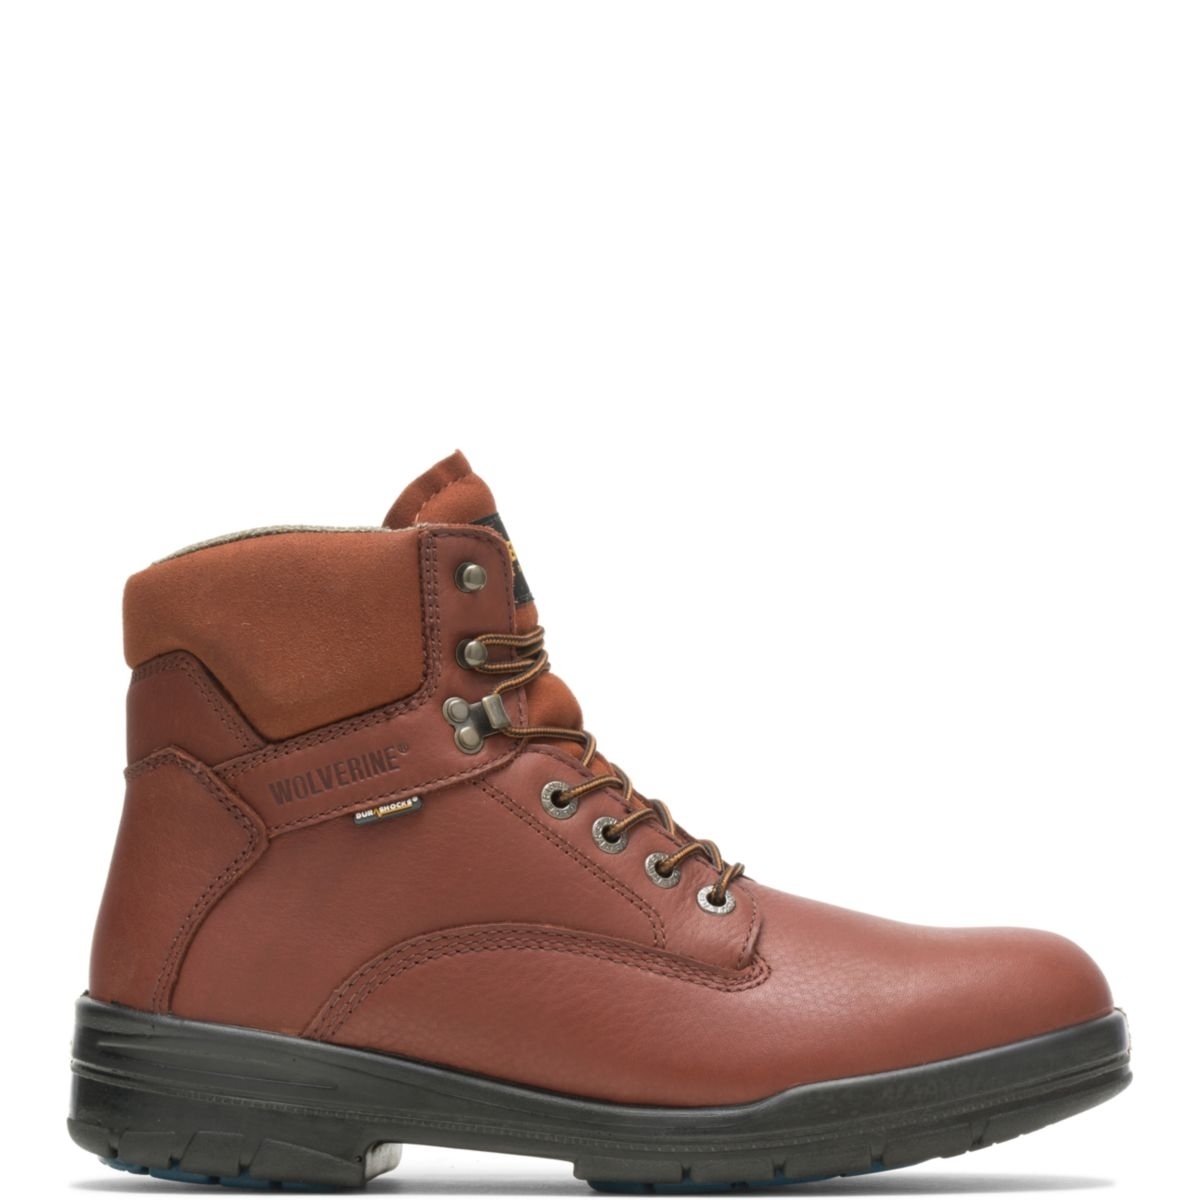 WOLVERINE Men's 6 DuraShocksÂ® Steel Toe Direct-Attach Work Boot Brown - W03120 BROWN - BROWN, 10